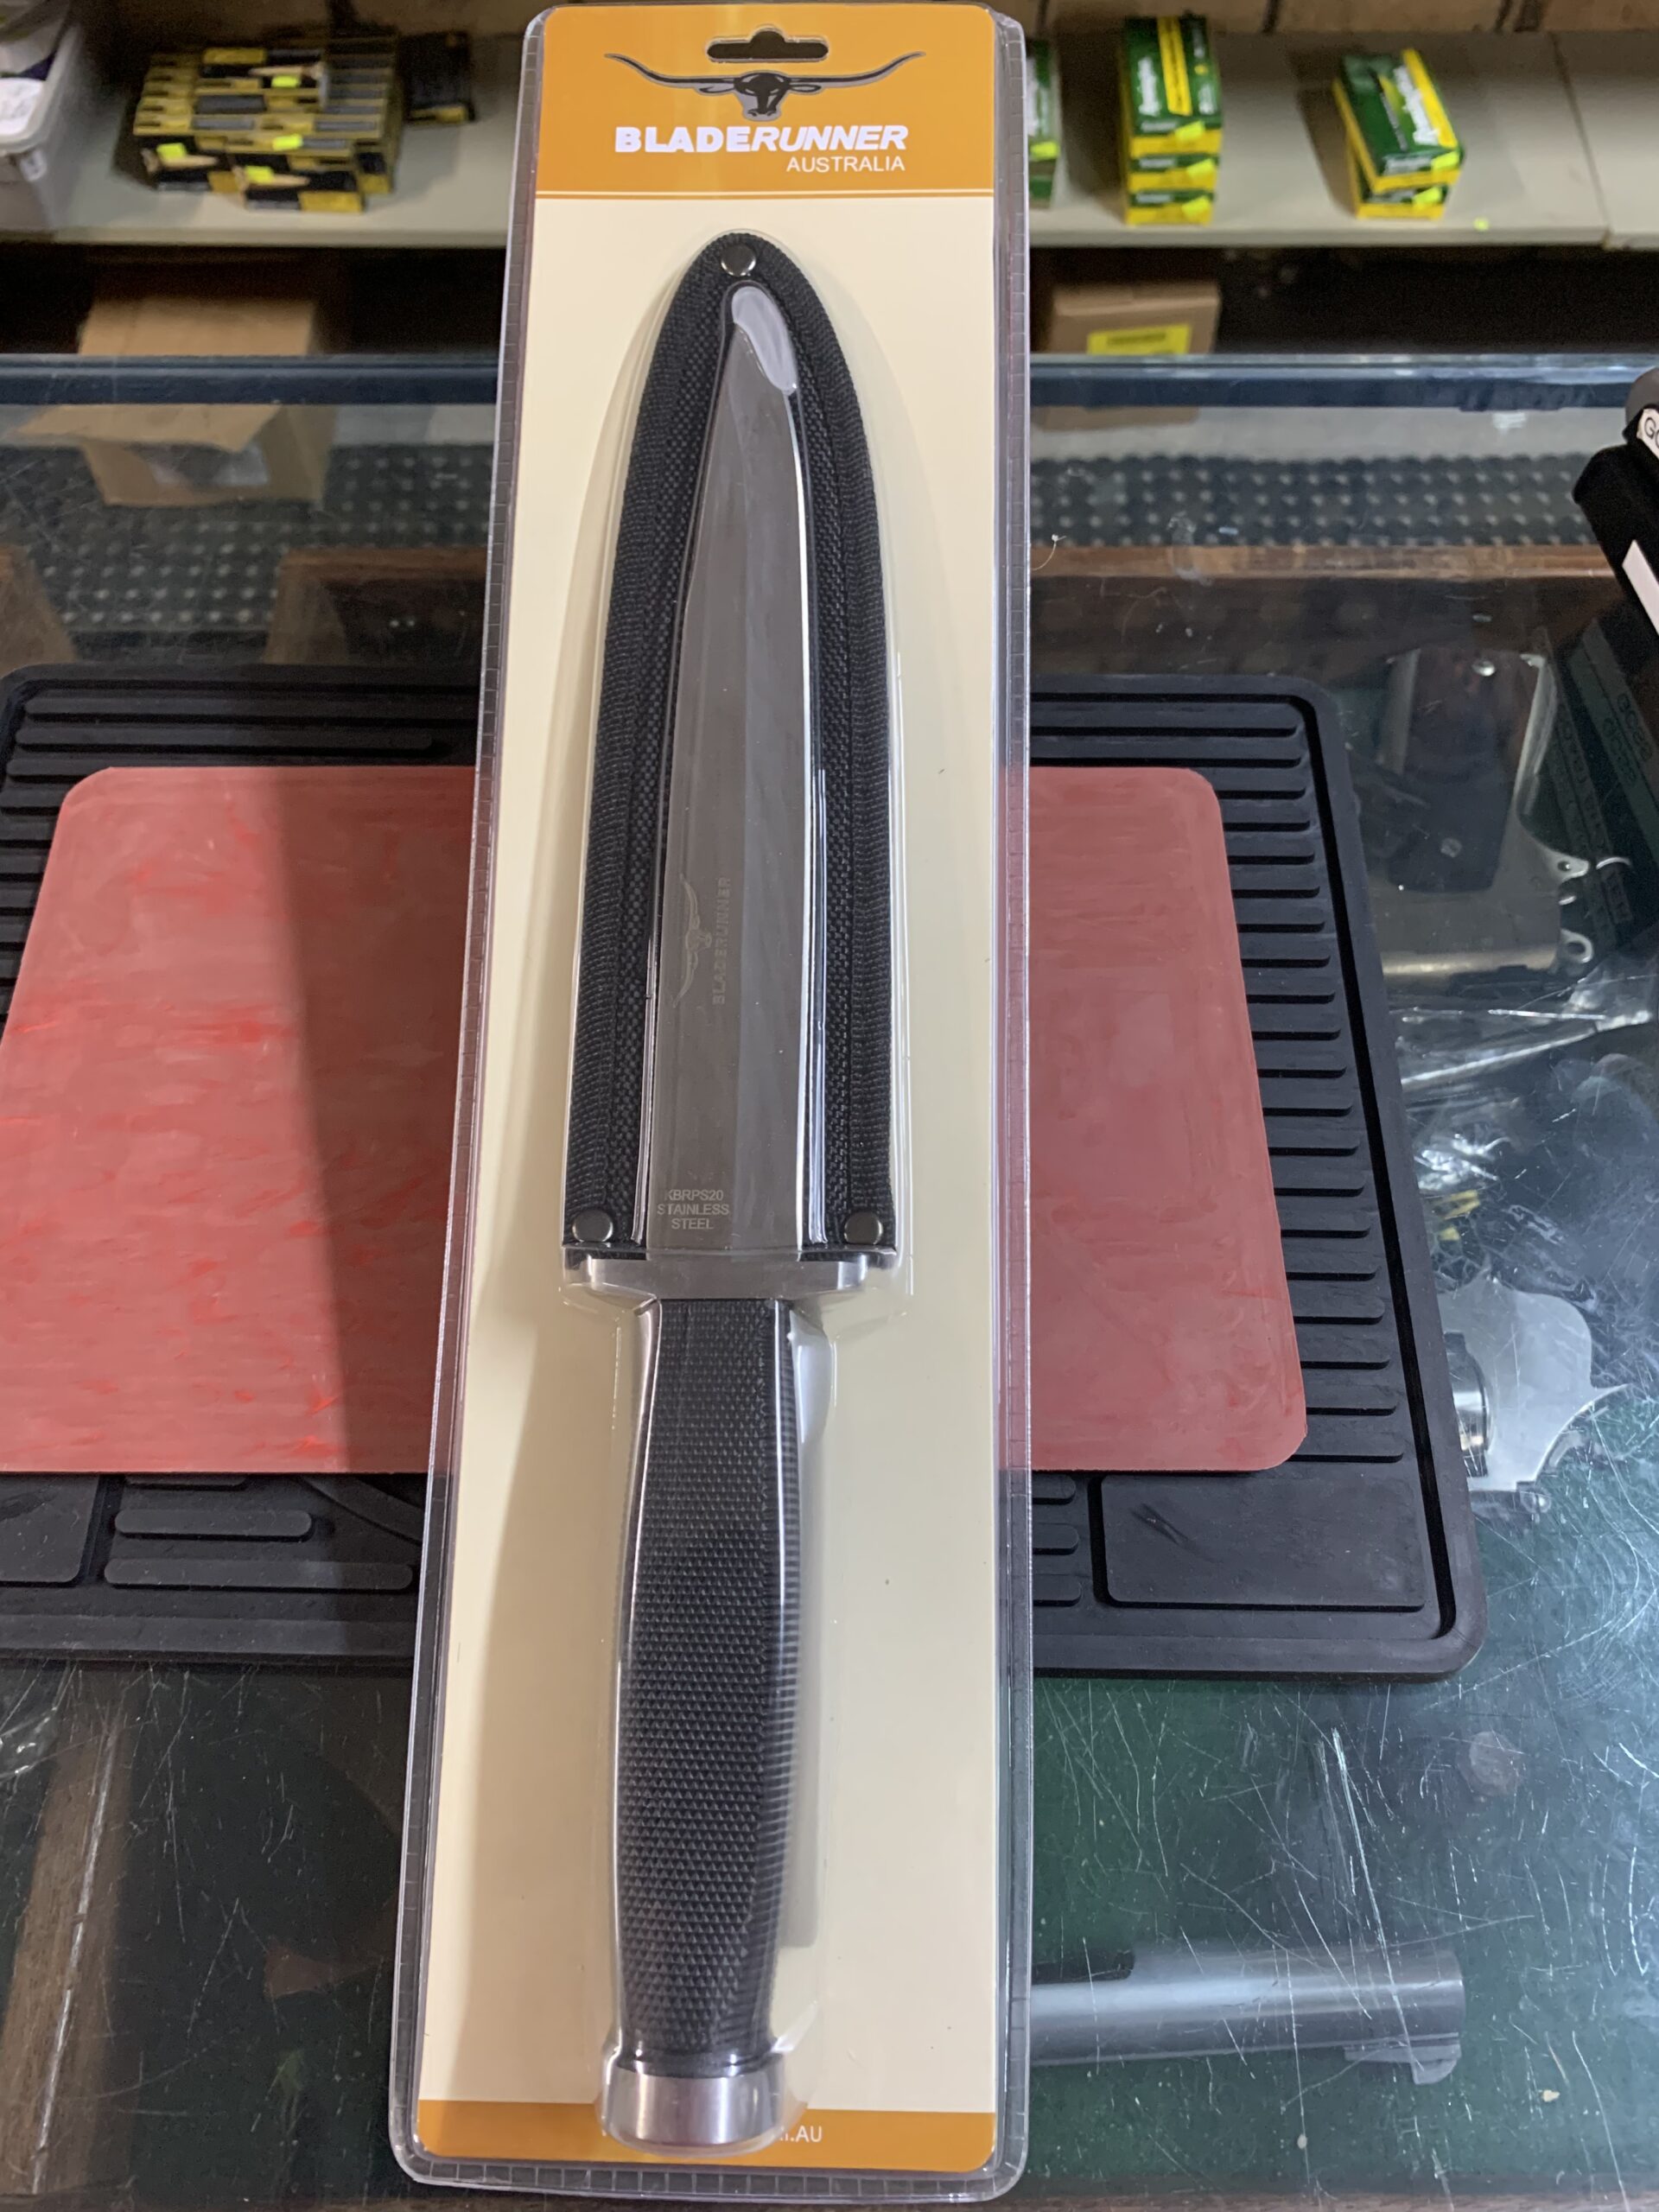 Bladerunner Pigsticker knife with sheath